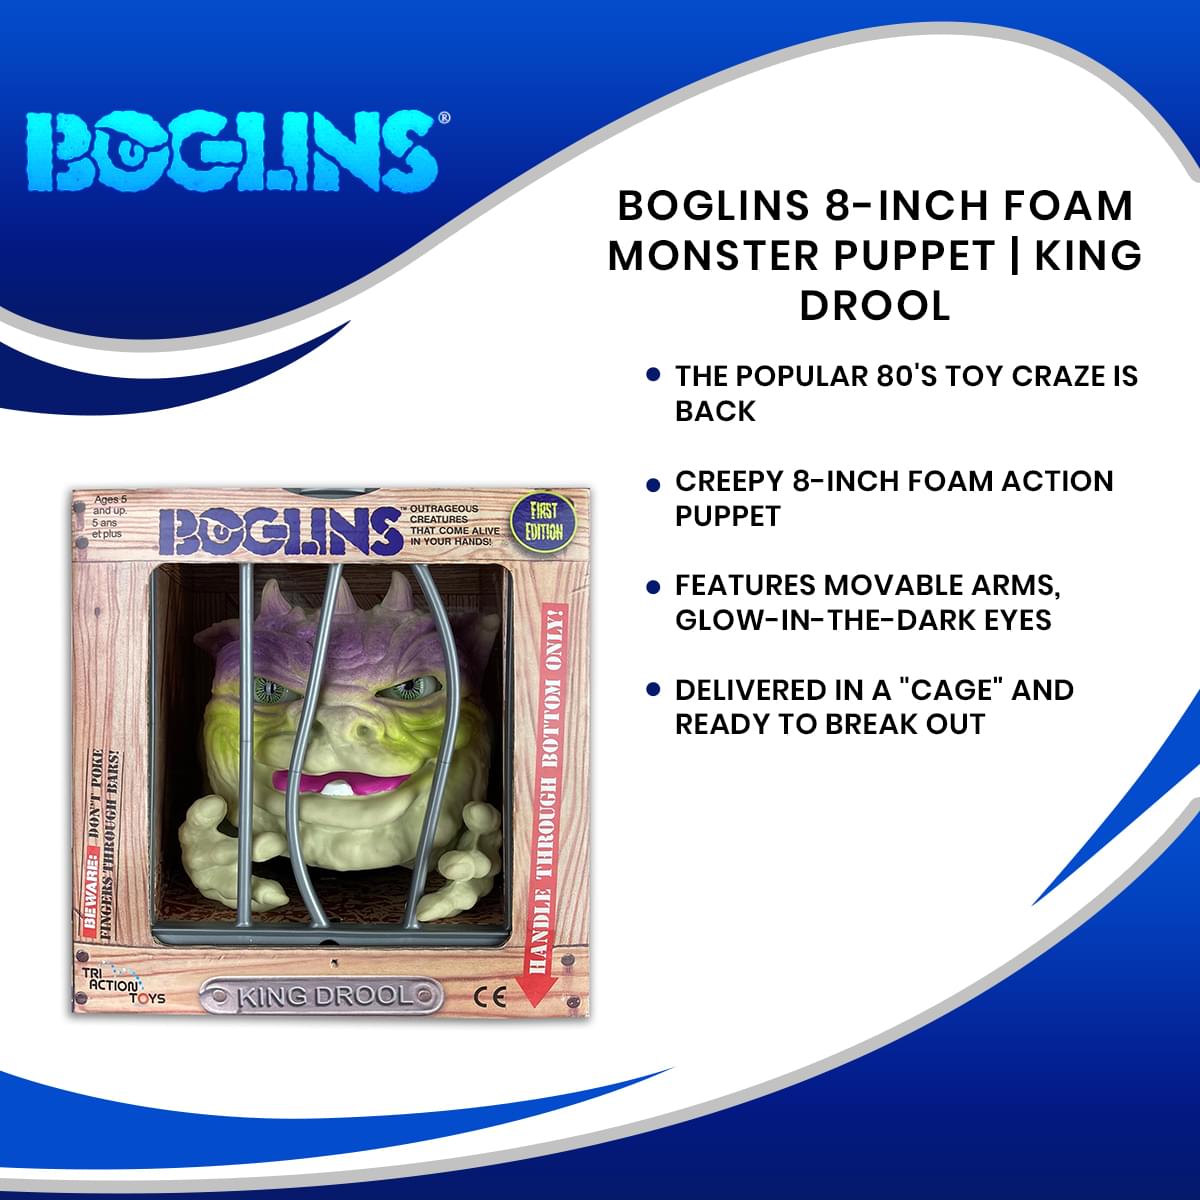 Boglins 8-Inch Foam Monster Puppet | King Drool